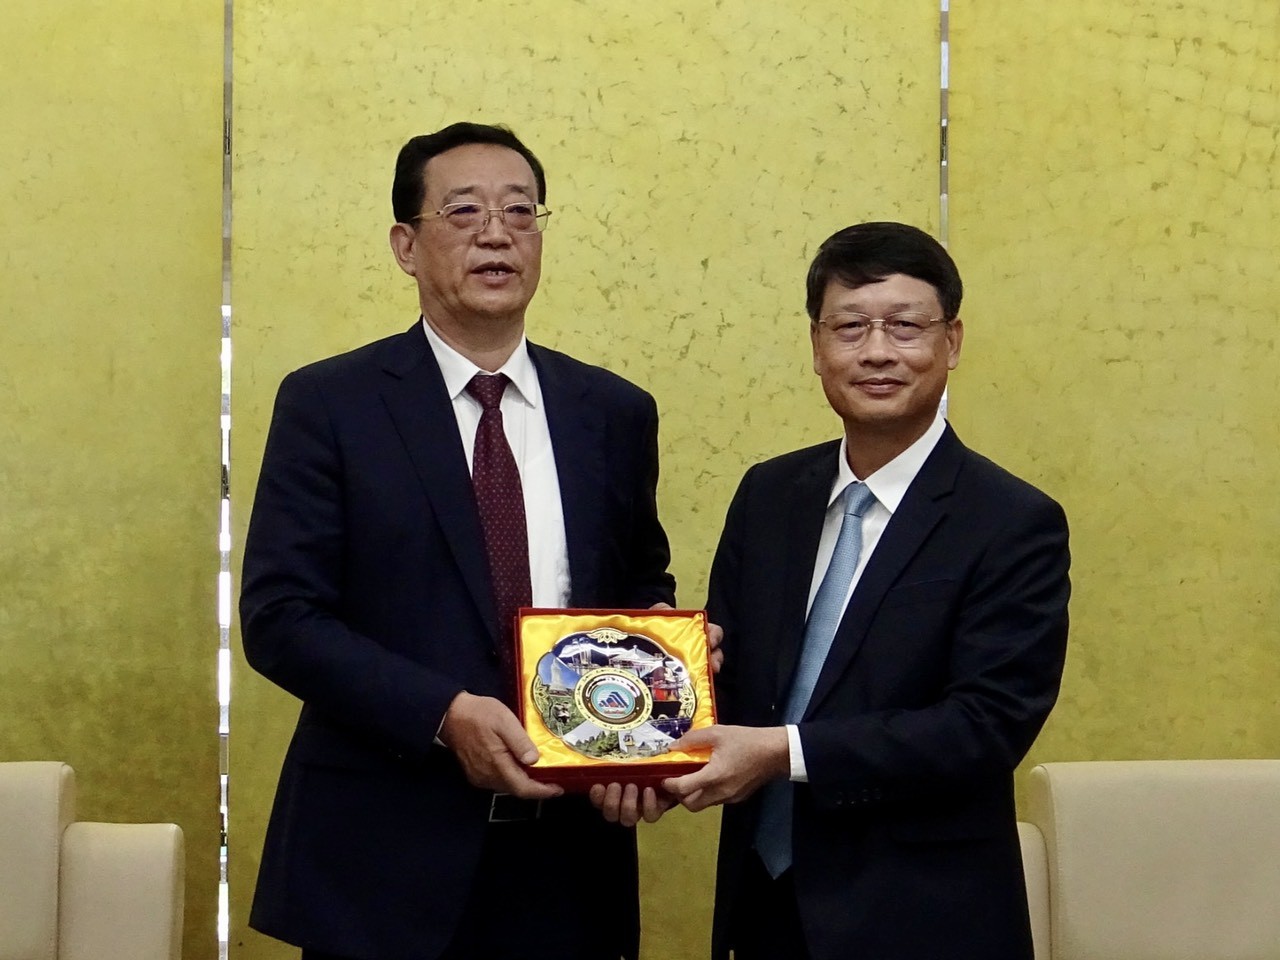 Chủ tịch Ủy ban MTTQ Việt Nam thành phố Ngô Xuân Thắng (bên phải) tặng quà lưu niệm đến Phó Chủ tịch Hội nghị Hiệp thương Chính trị Nhân dân tỉnh Liêu Ninh (Trung Quốc) Vương Minh Ngọc. (Ảnh: dạng.gov)